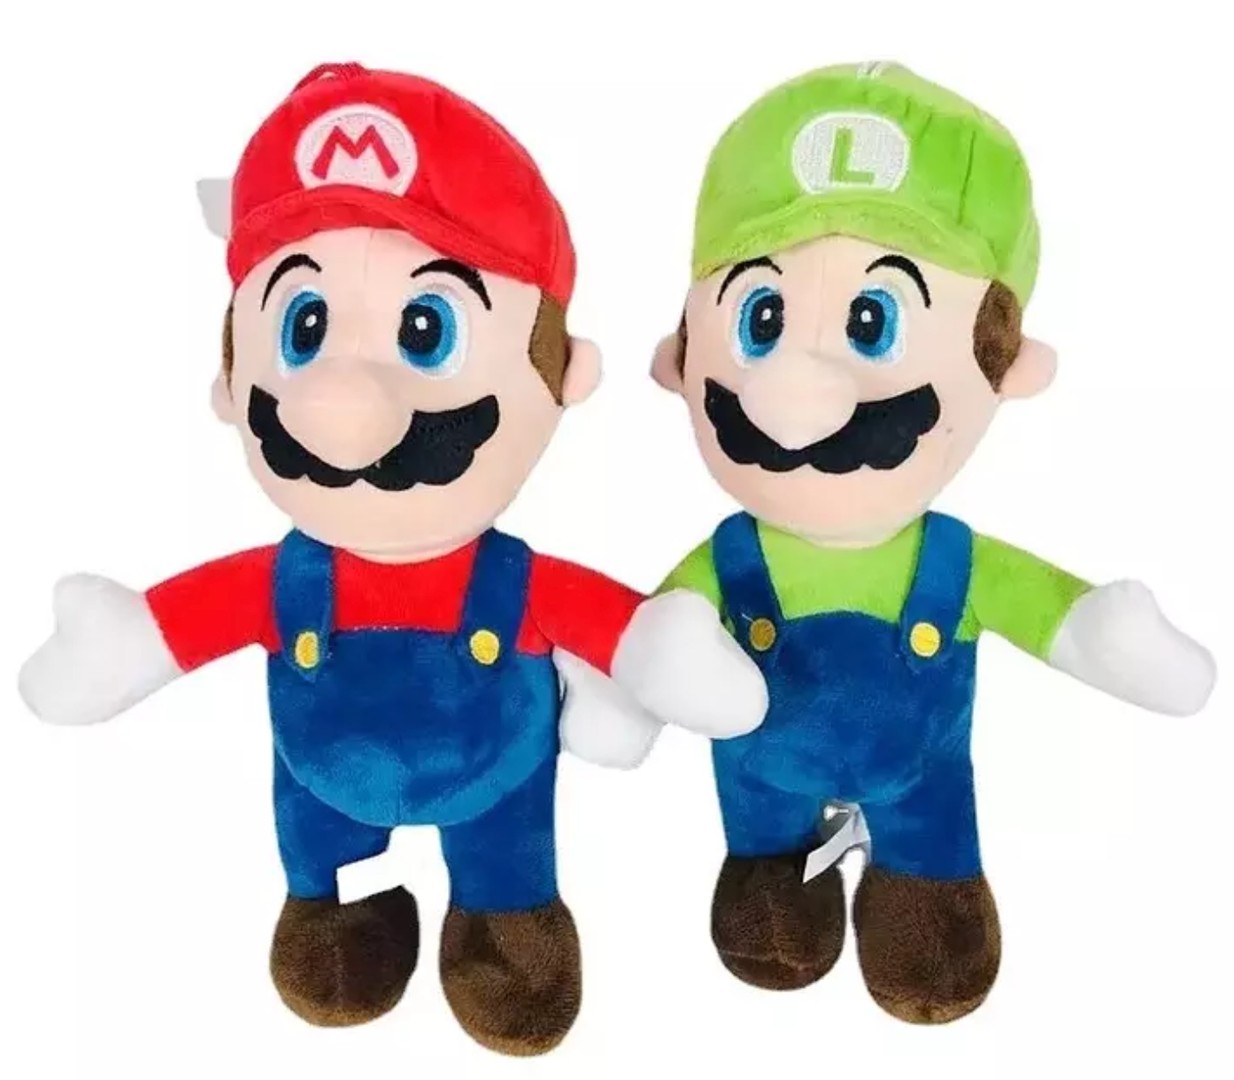 juguetes - Peluche de Mario y Luigui luigi Bross GRANDE XXL PLUS 0